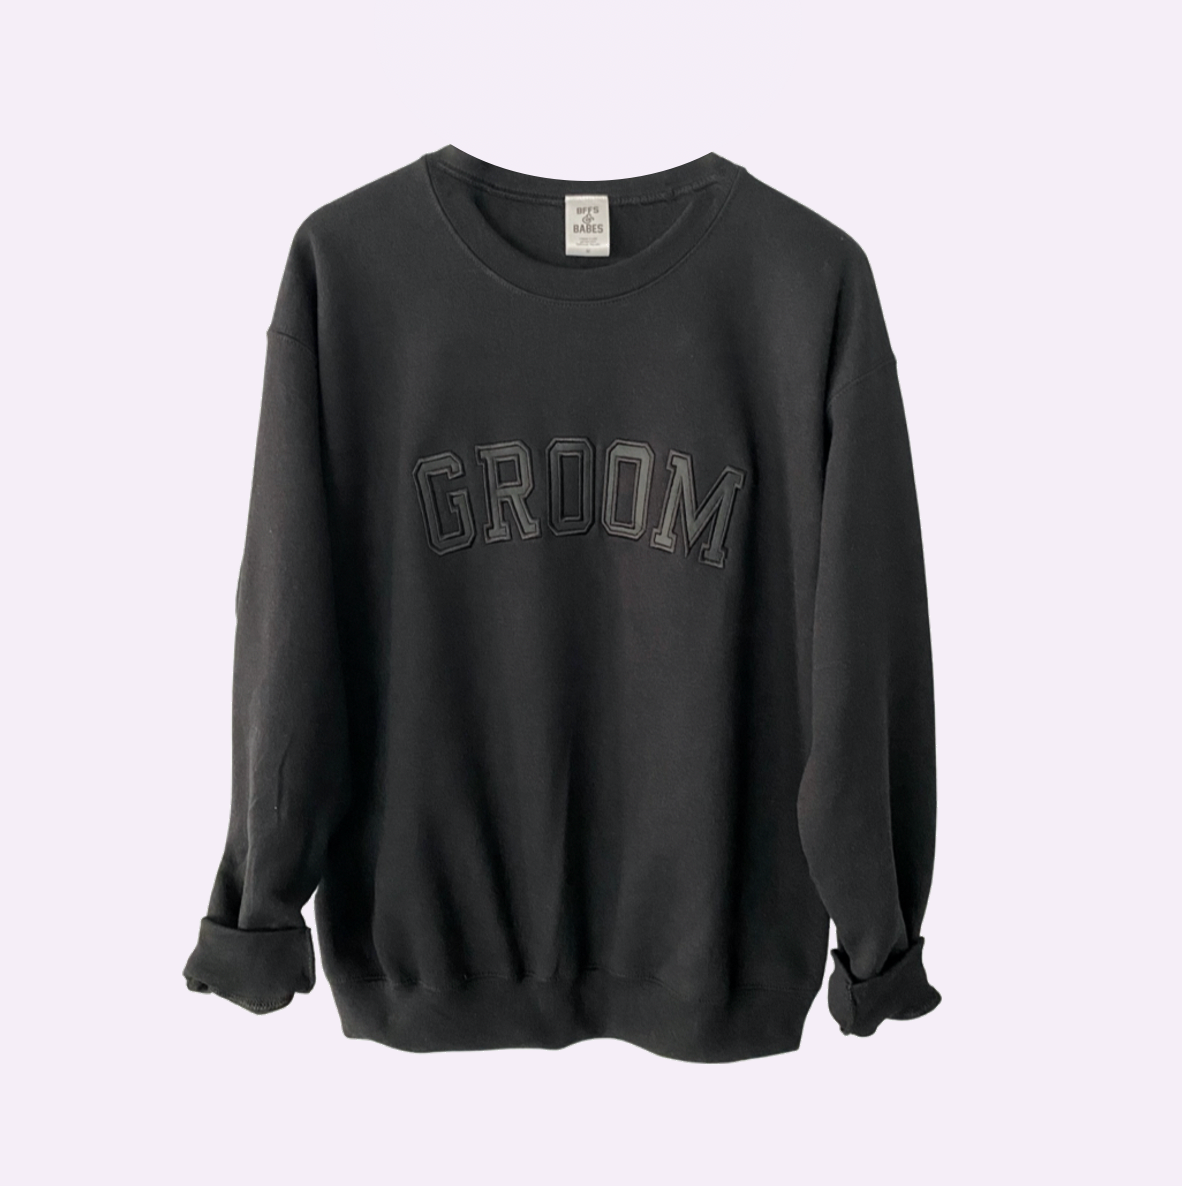 GROOM ♡ black adult embroidered sweatshirt